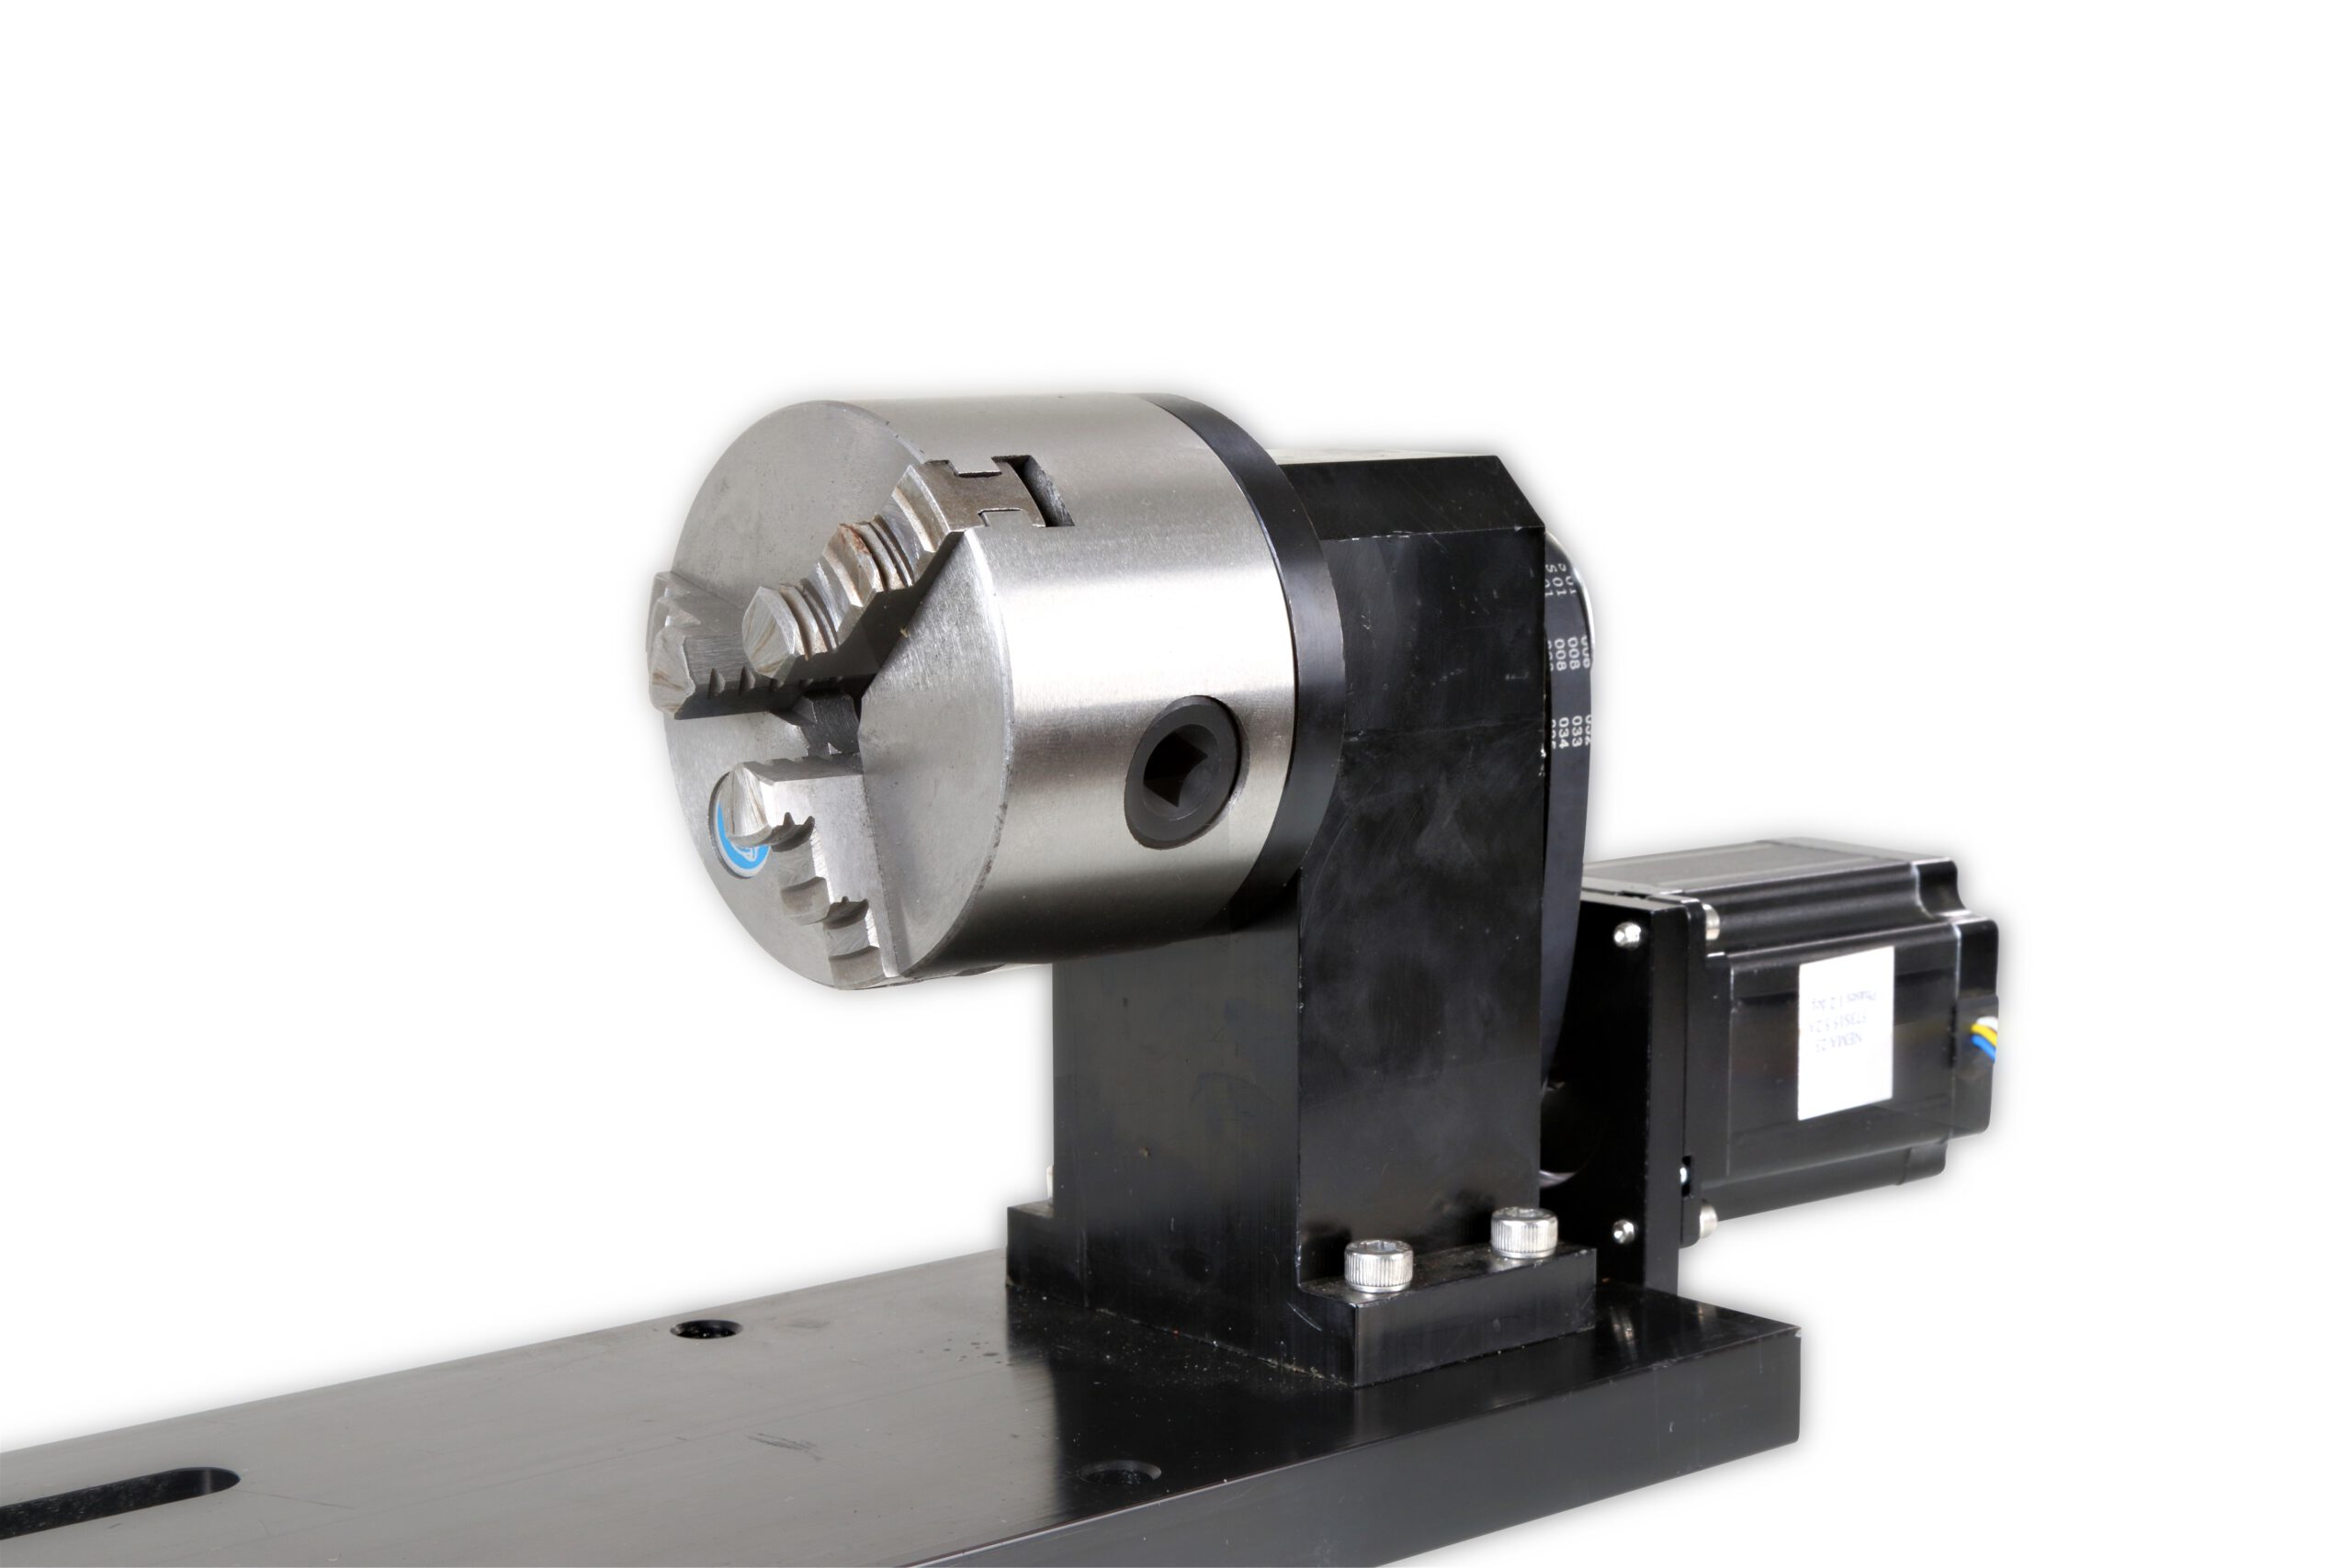 περιστροφικό μηχανικό σύστημα για χάραξη με laser